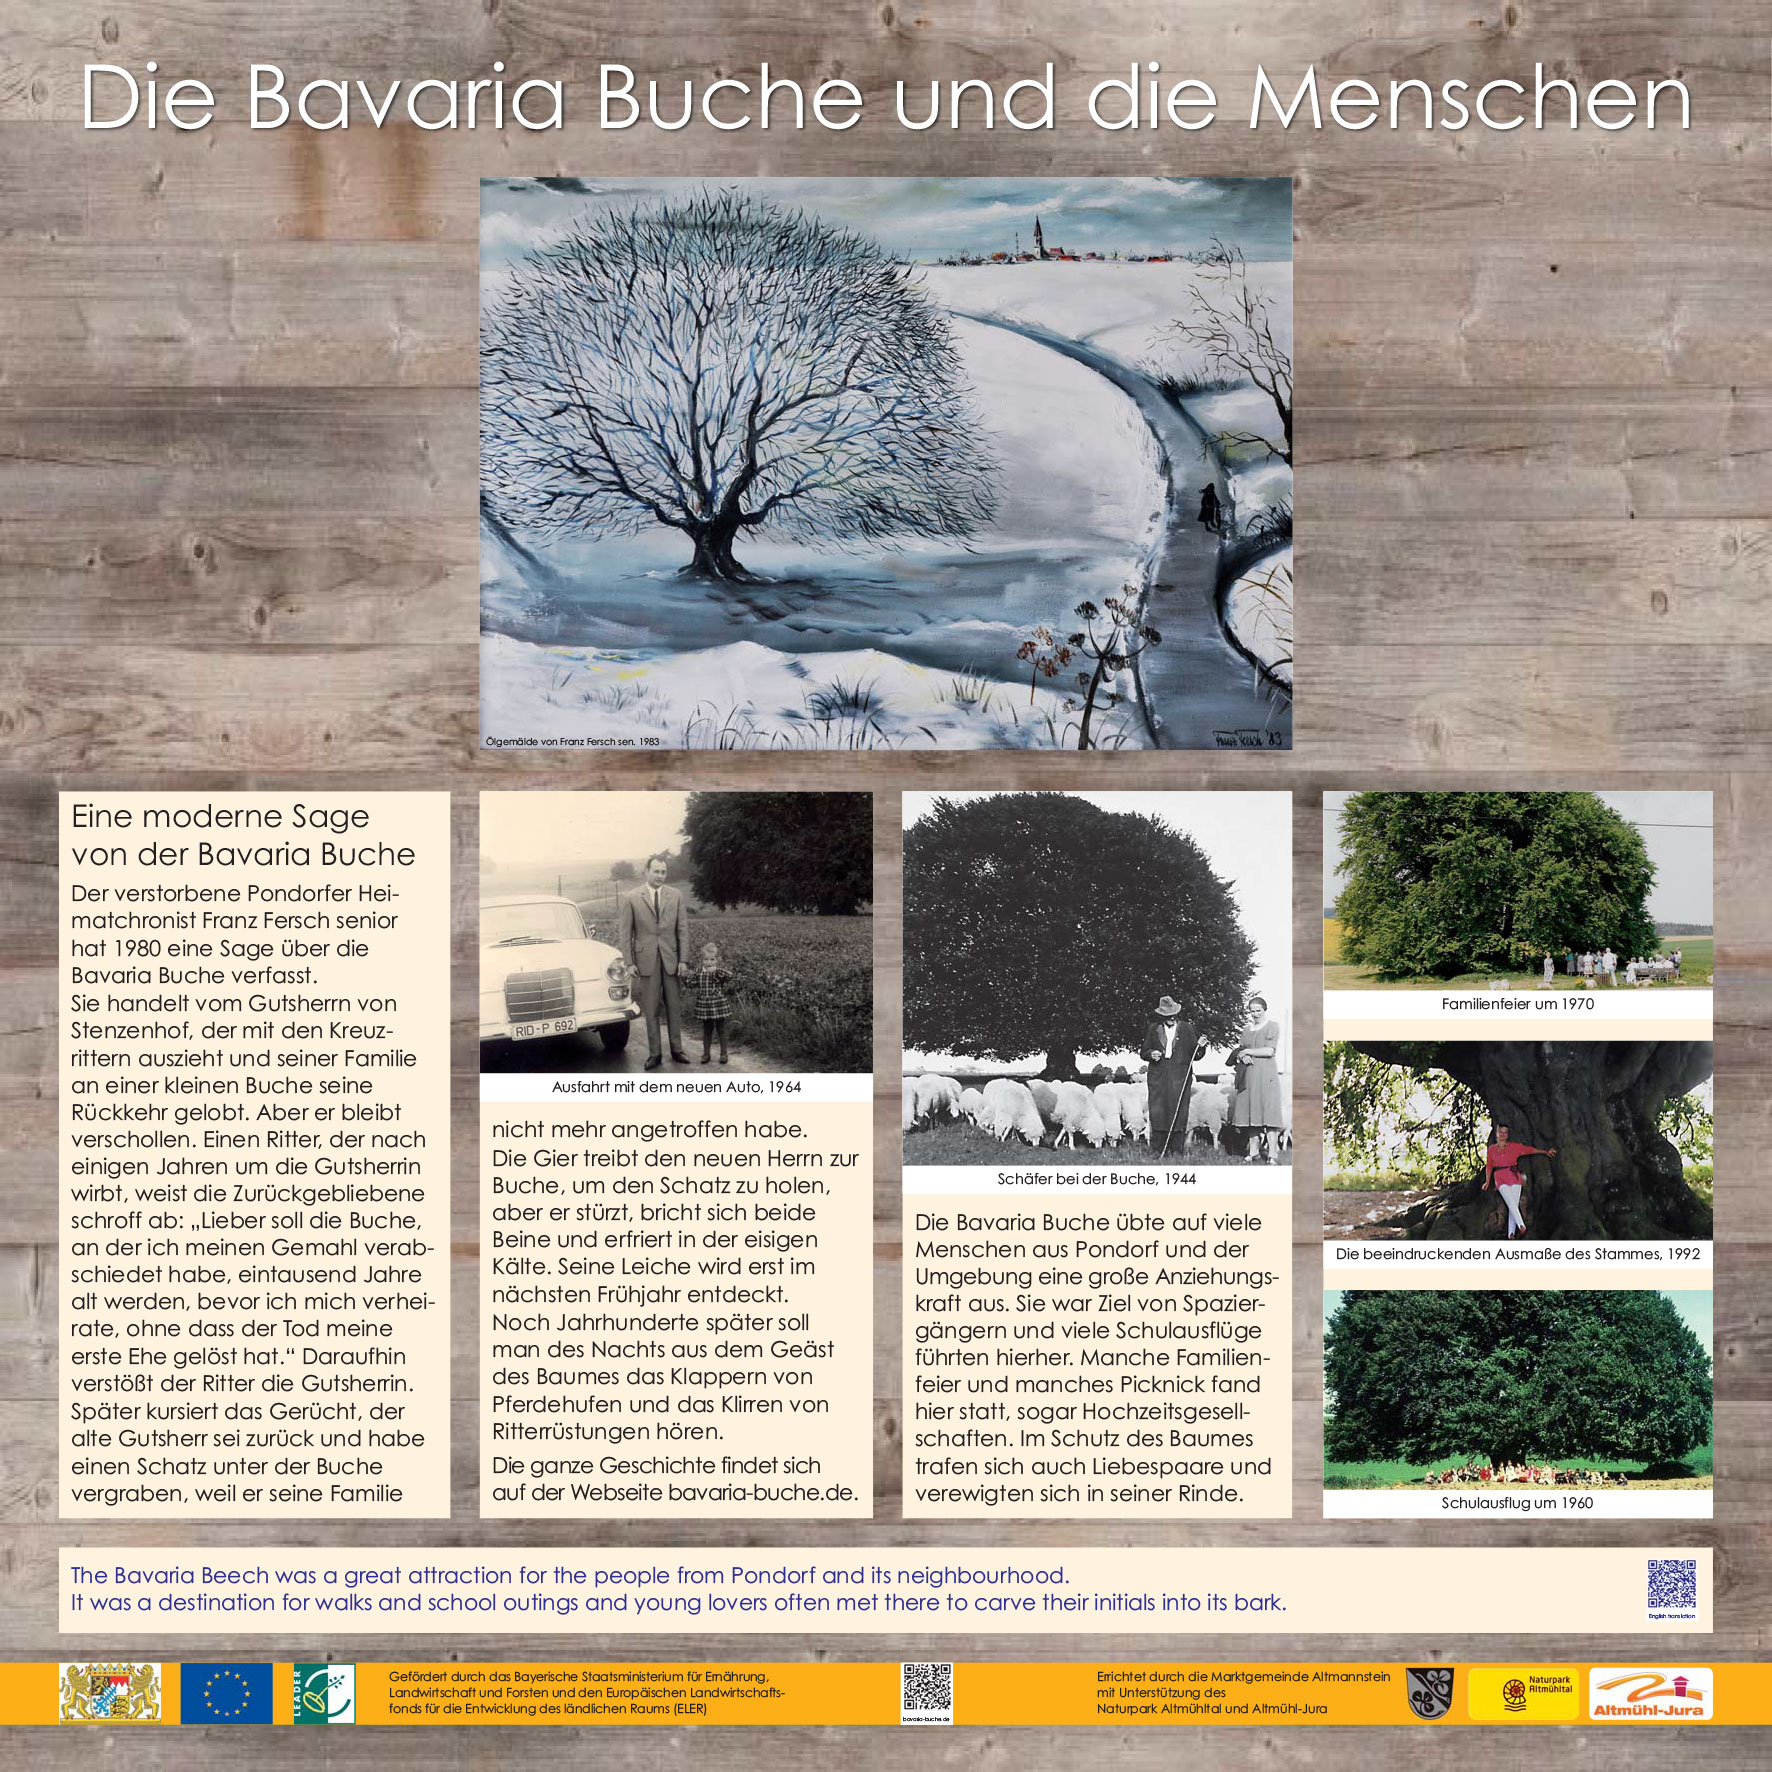 Die Bavaria Buche - Menschen